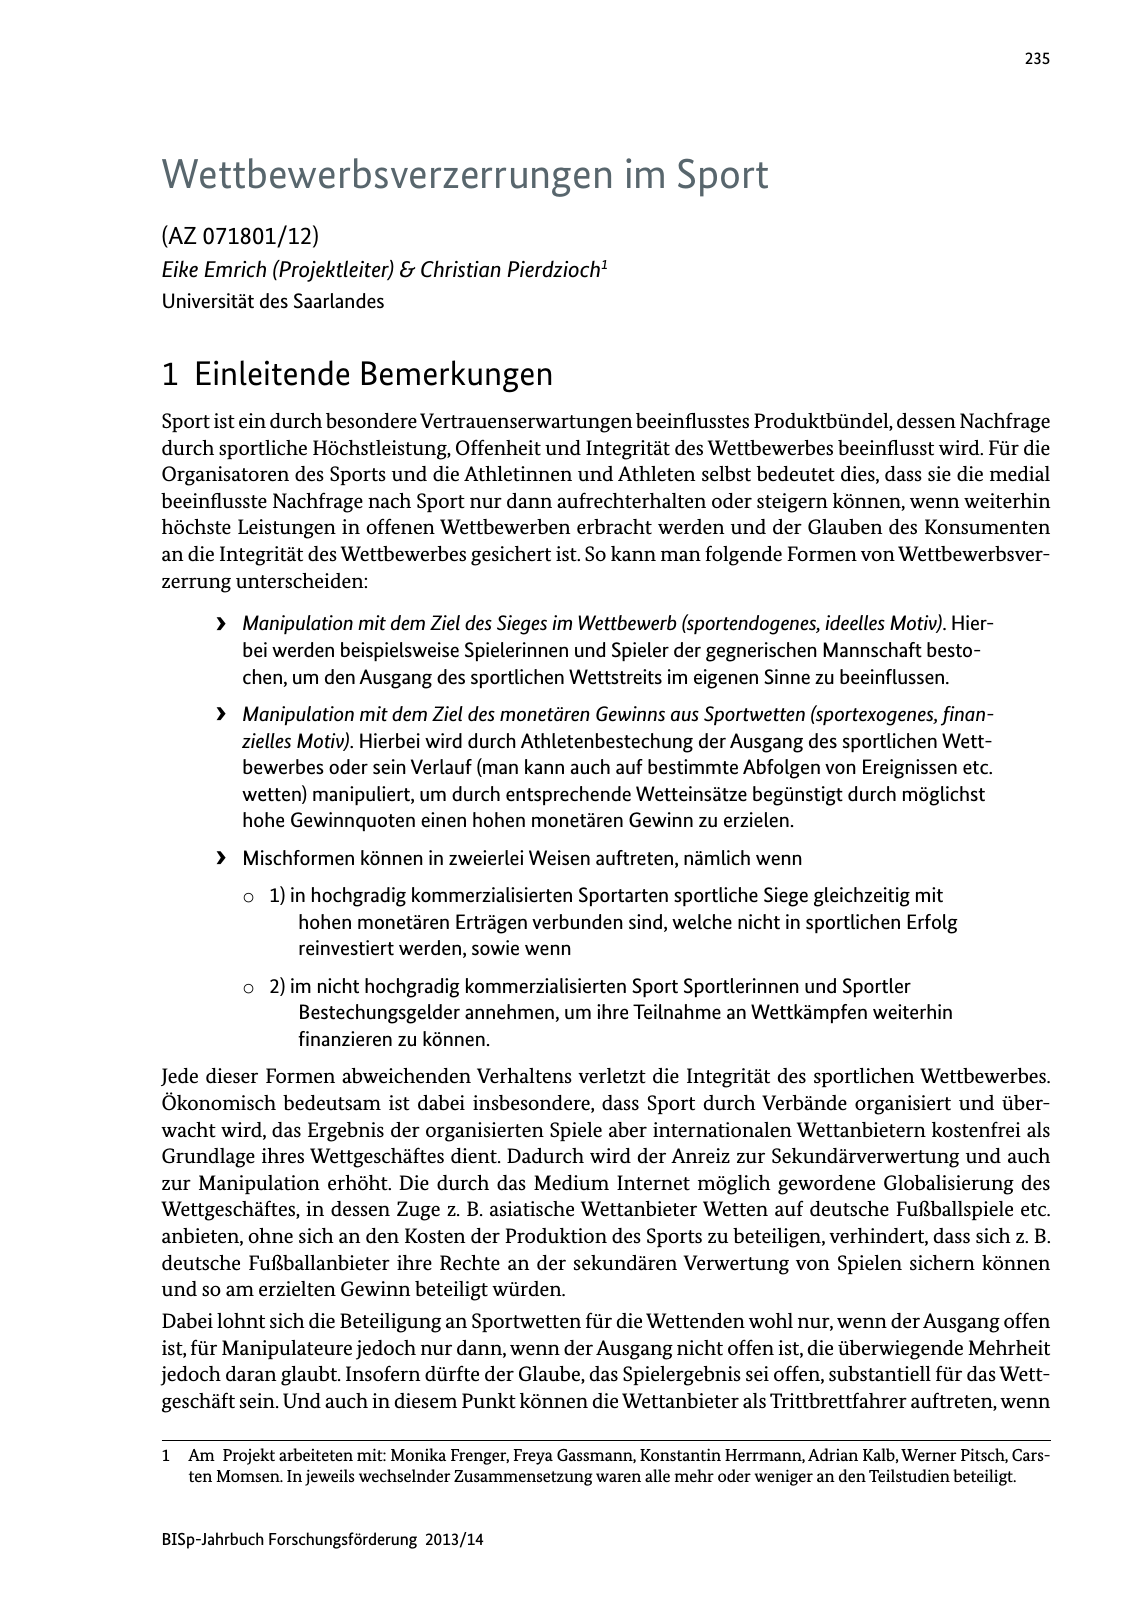 Vorschau BISp-Jahrbuch Forschungsförderung 2013/14 Seite 236